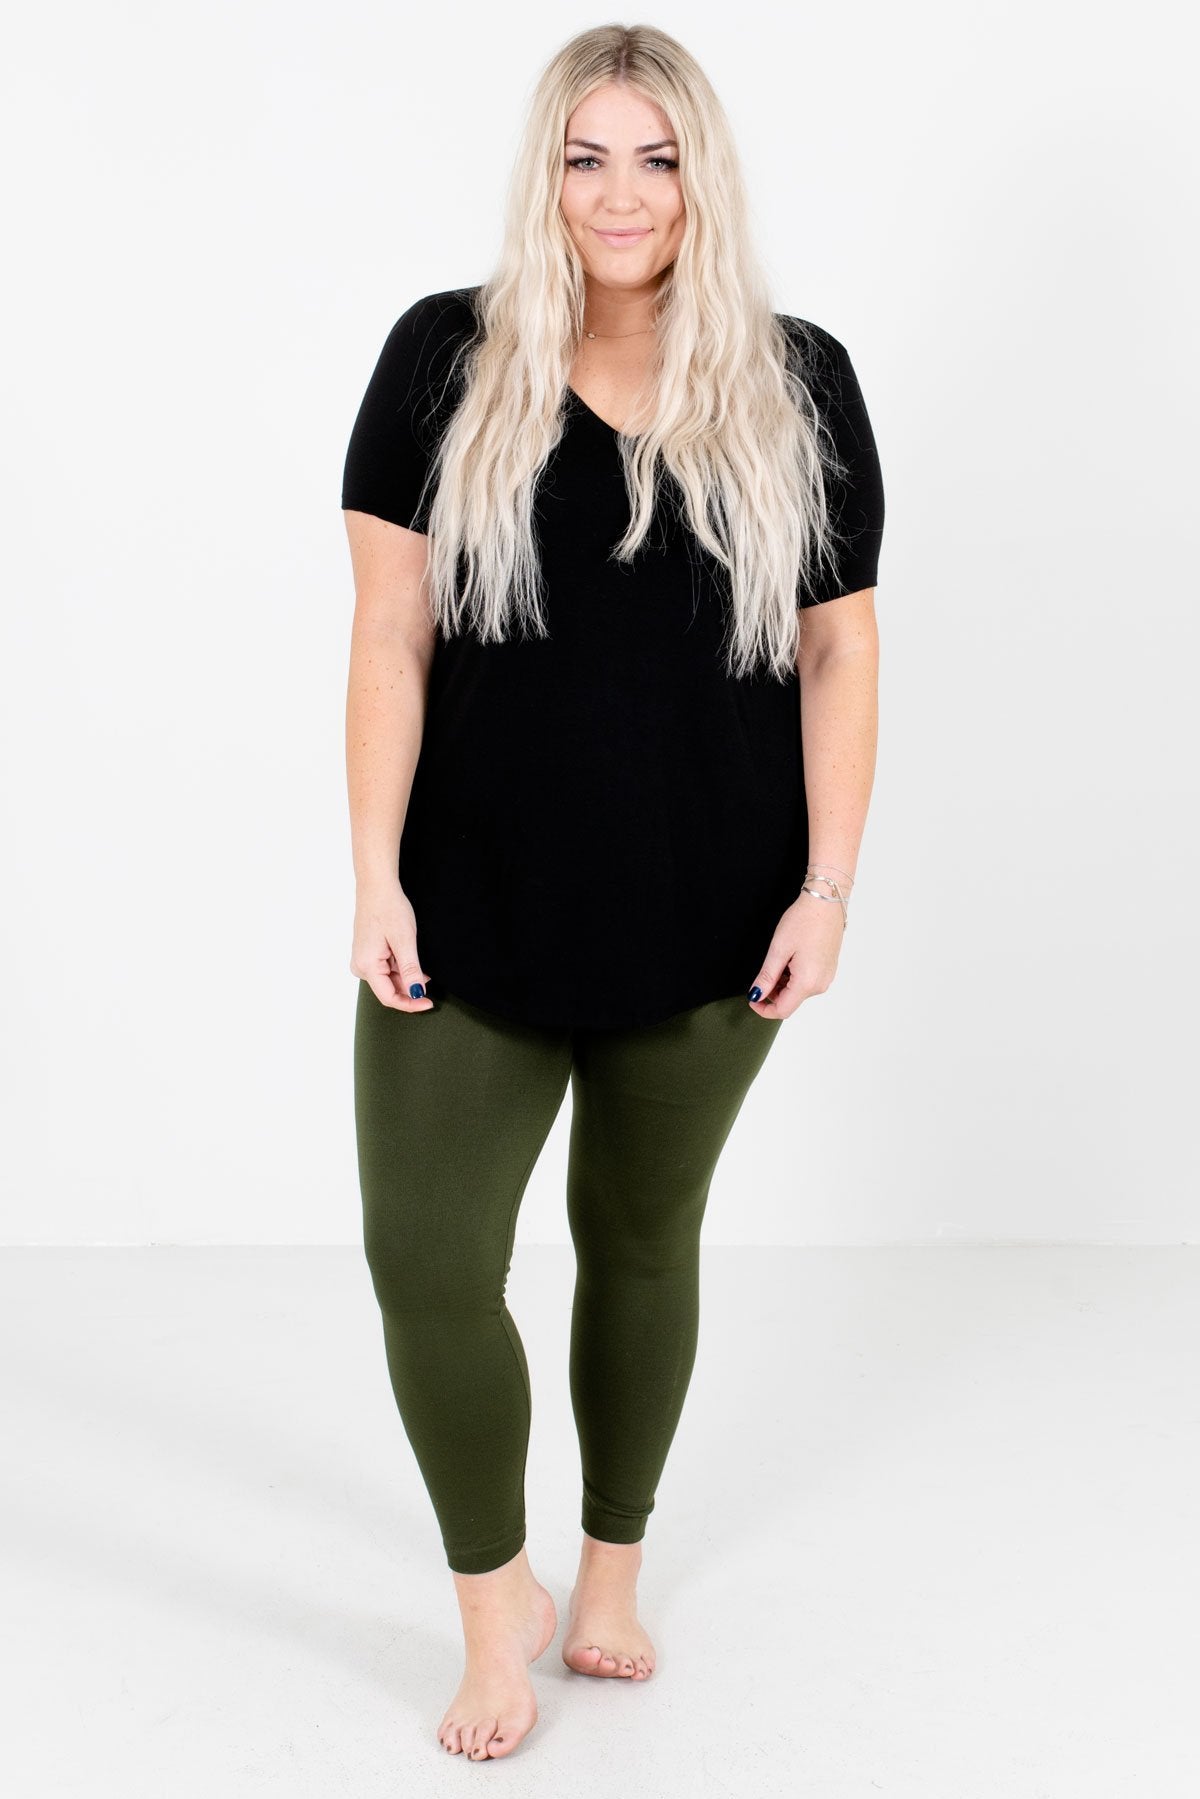 Green leggings sofra sz free size | eBay